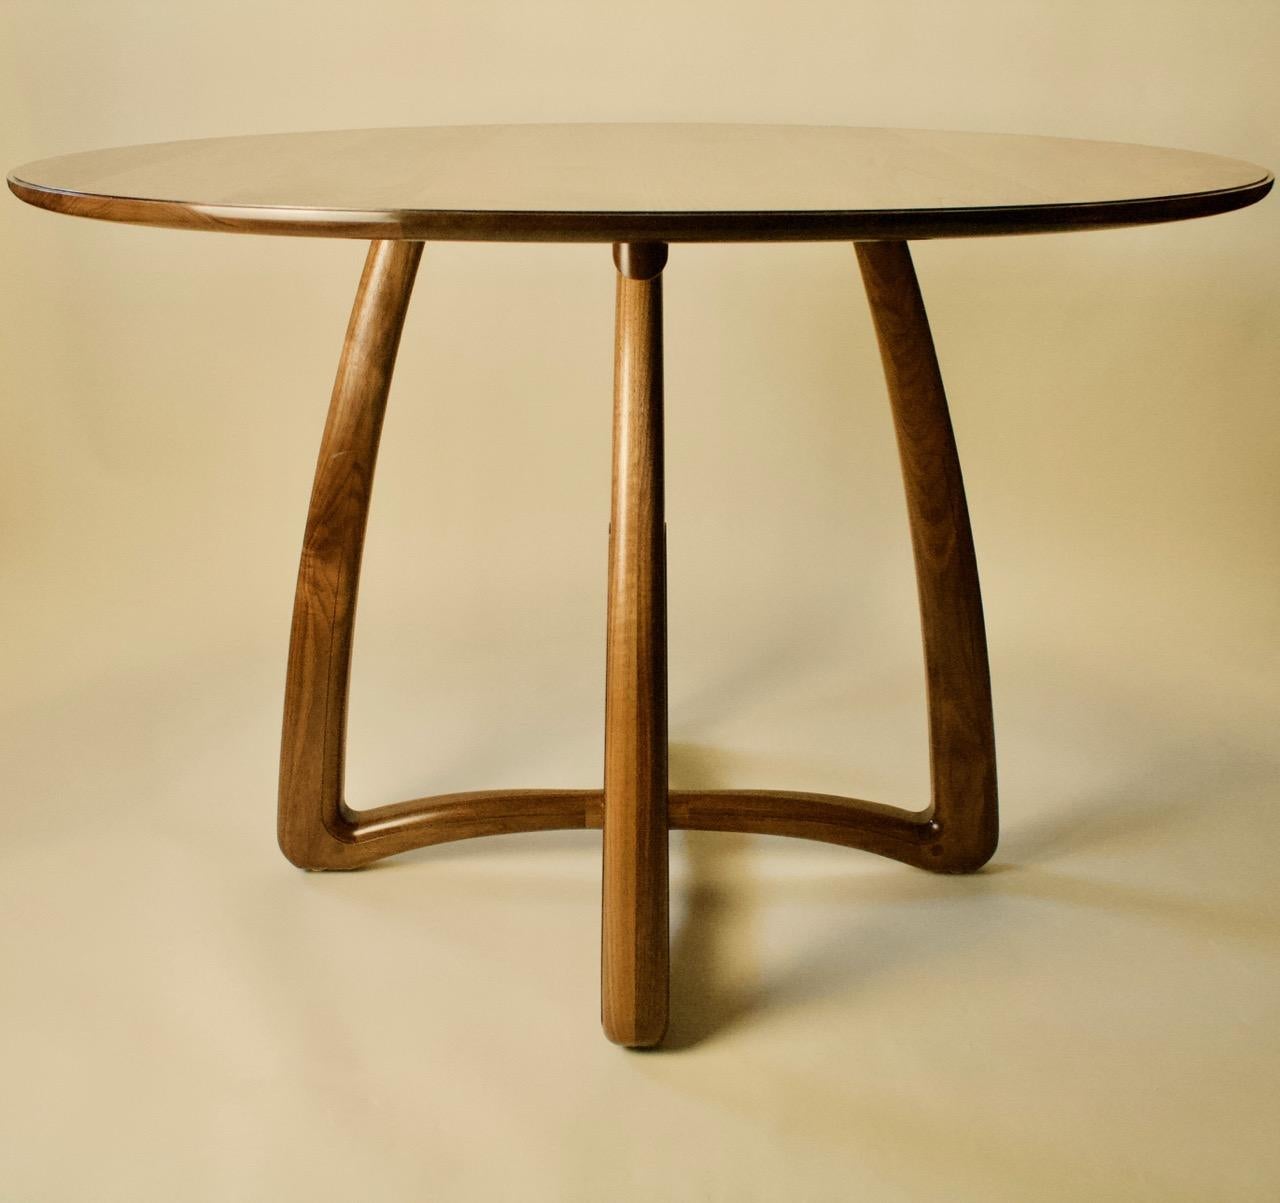 TABLE BELL CHAMBER  Salle à manger, Foyer, Entrée.

Les meubles artisanaux de Kenton Jeske woodworker sont fabriqués selon les normes les plus strictes en matière d'artisanat, de matériaux et de finition. Le design sculptural et sensuel, associé à